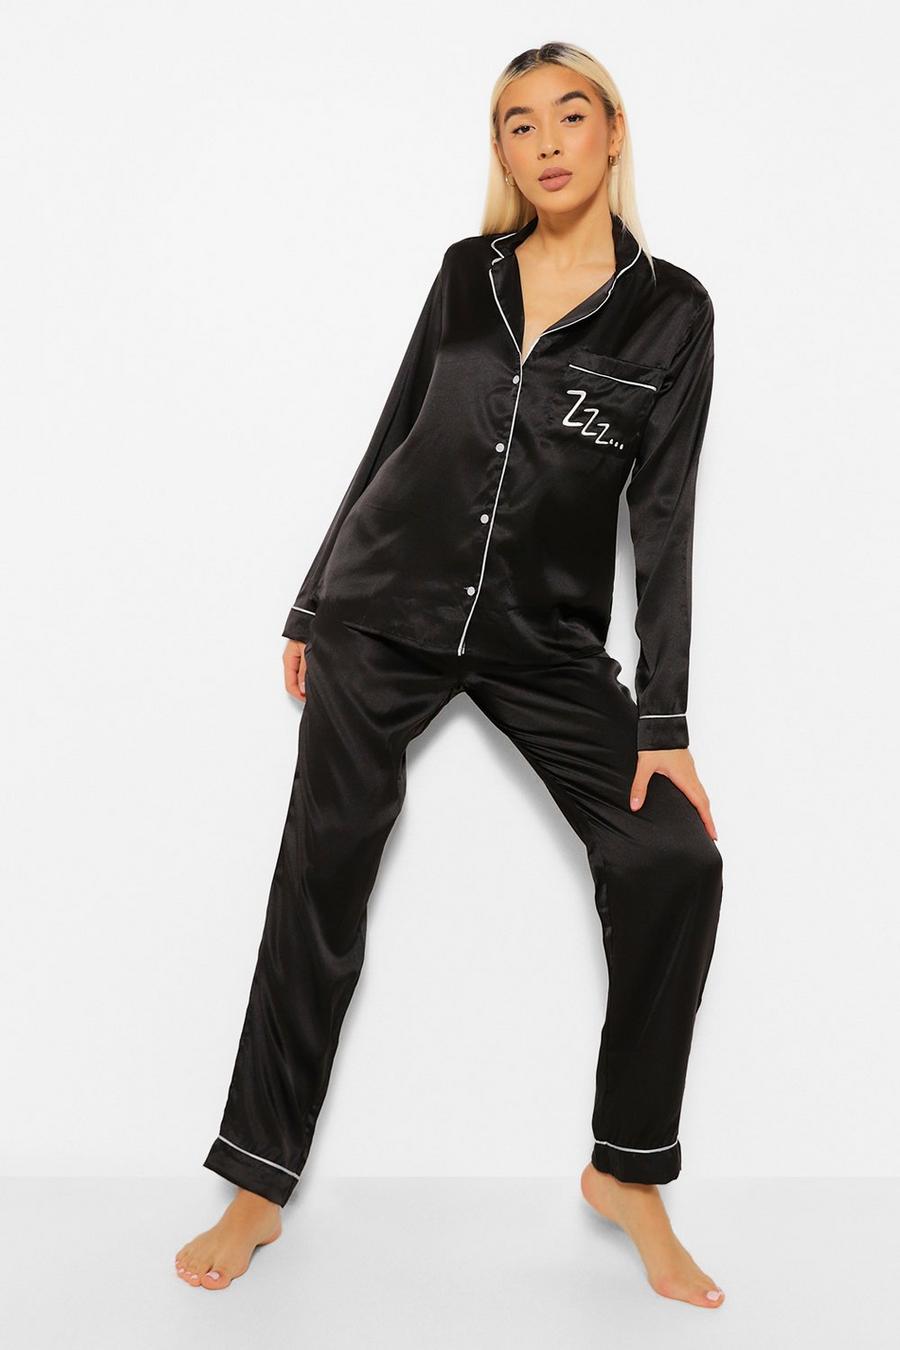 Black Zzz Satin Button Through Pants Pajama Set